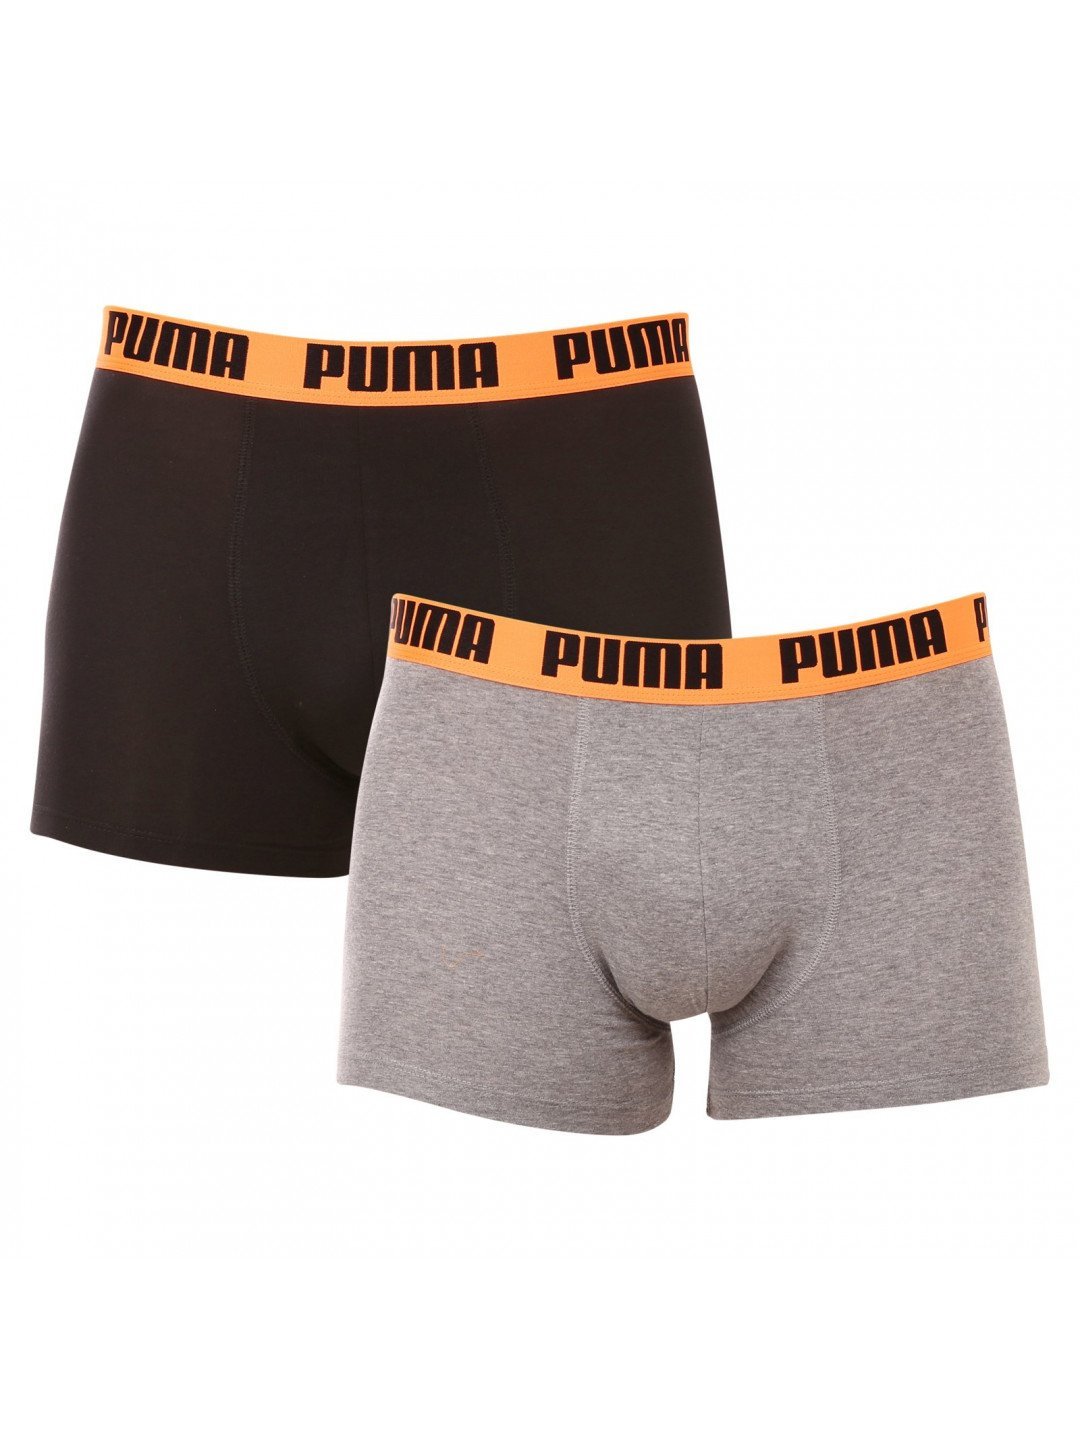 2PACK pánské boxerky Puma vícebarevné 521015001 050 M